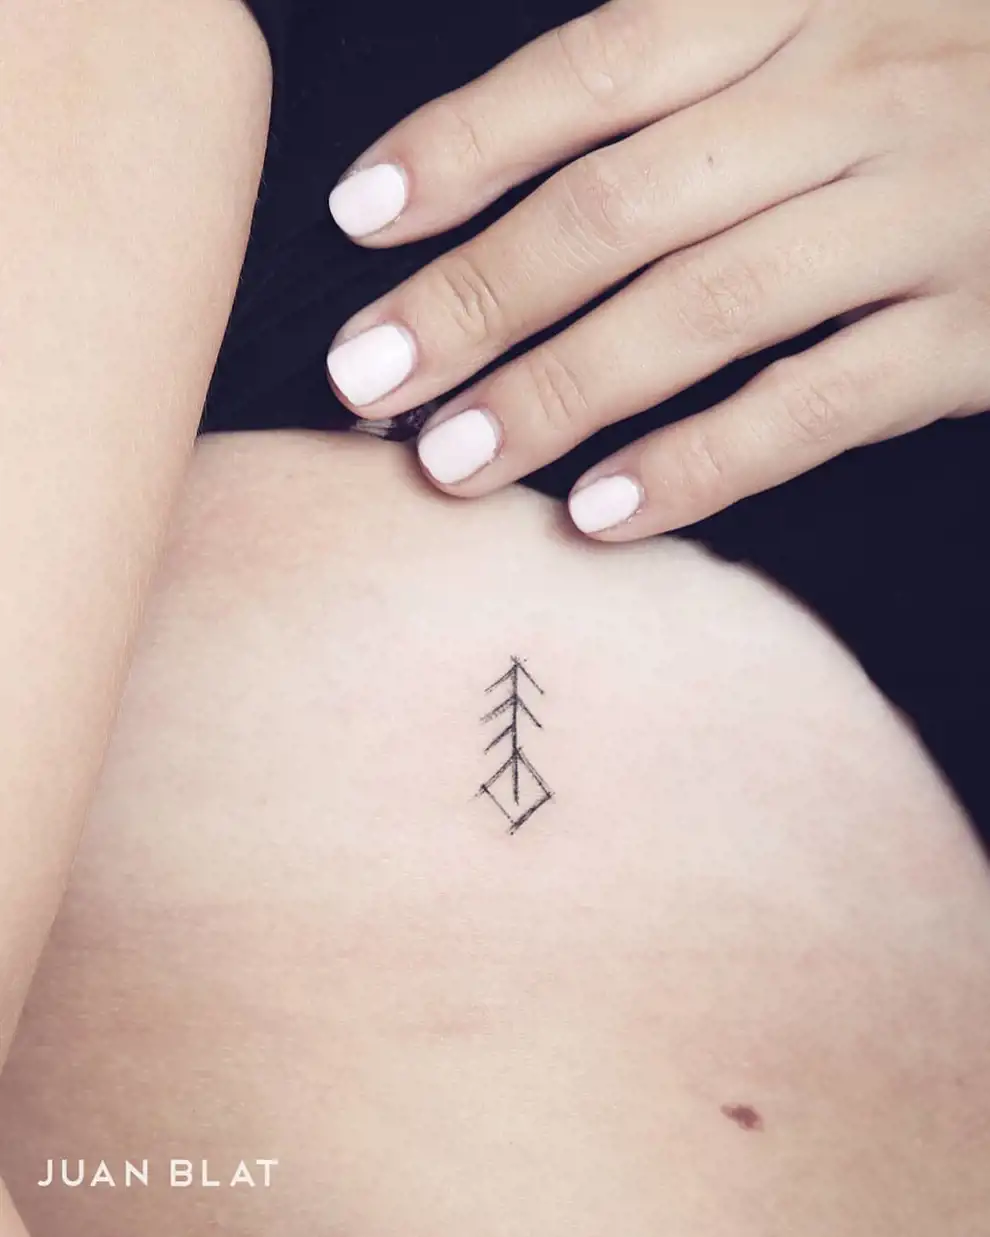 Runas vikingas para tattoos  Tatuajes de símbolos de amor